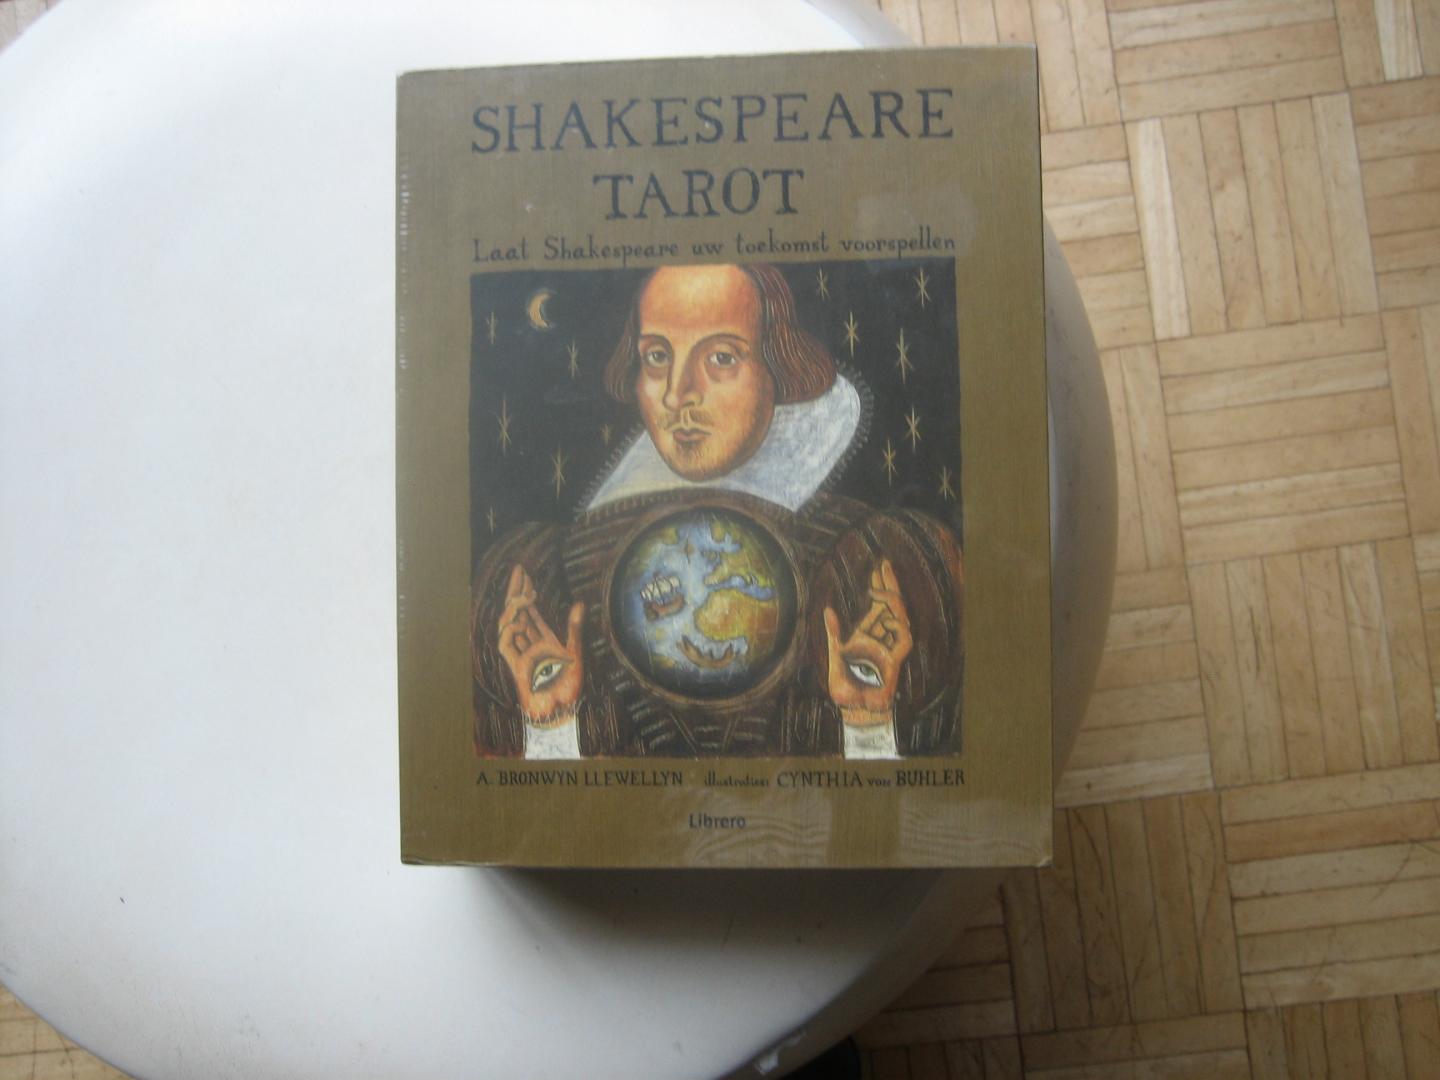 A. Bronwyn Llewellyn - Shakespeare Tarot / Laat Shakespeare uw toekomst voorspellen / NIEUW